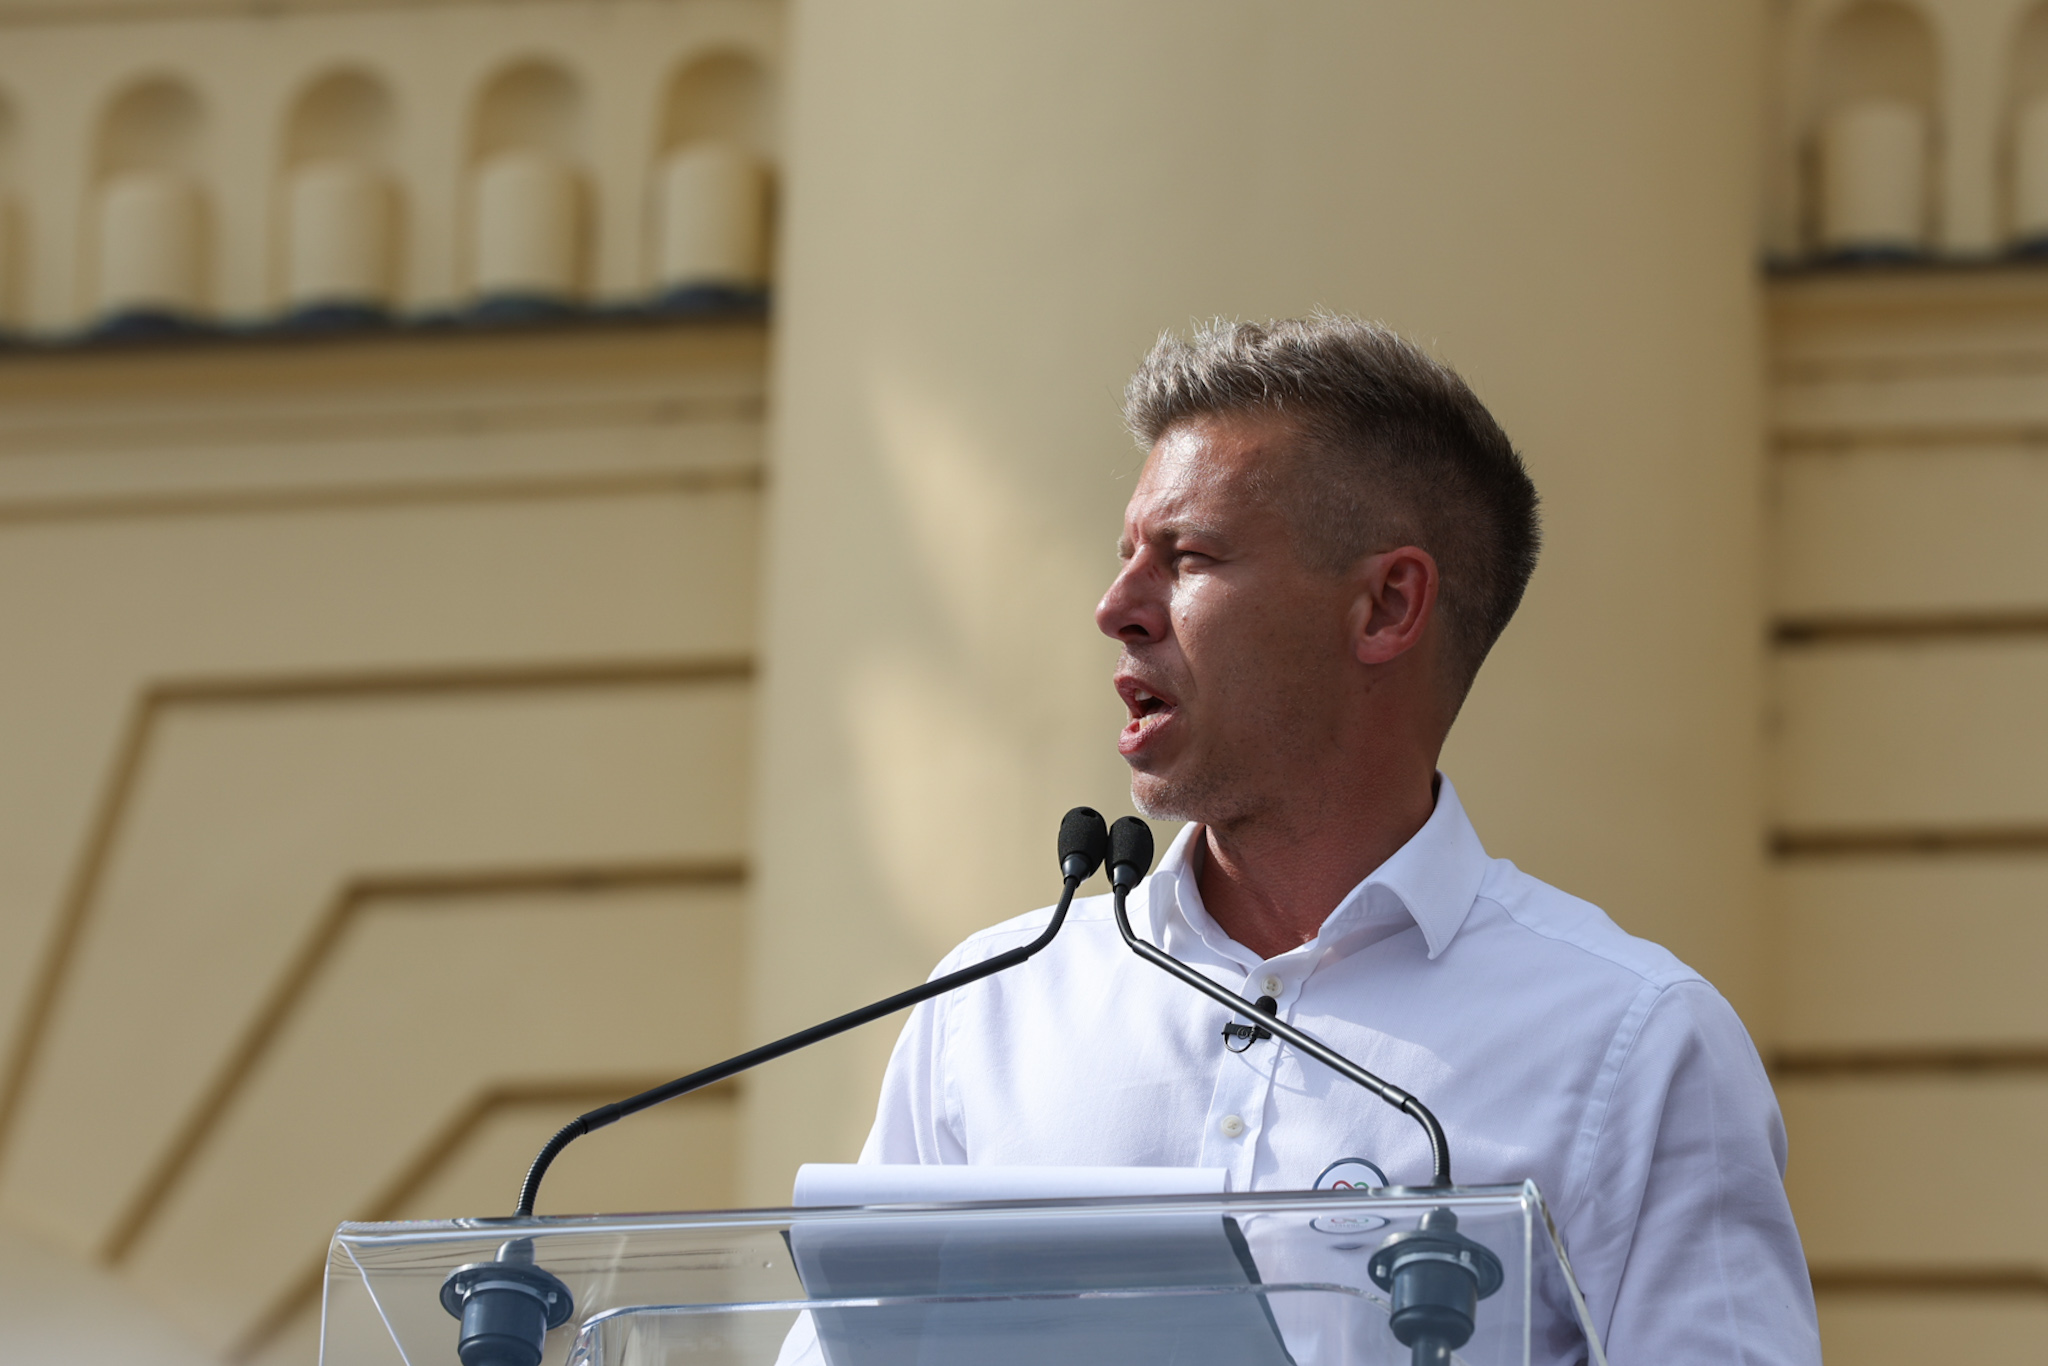 Magyar Péter: A Fidesz lakosságcserét hajt végre, amikor külföldi vendégmunkásokat hoz, és még több magyart kényszerít külföldre